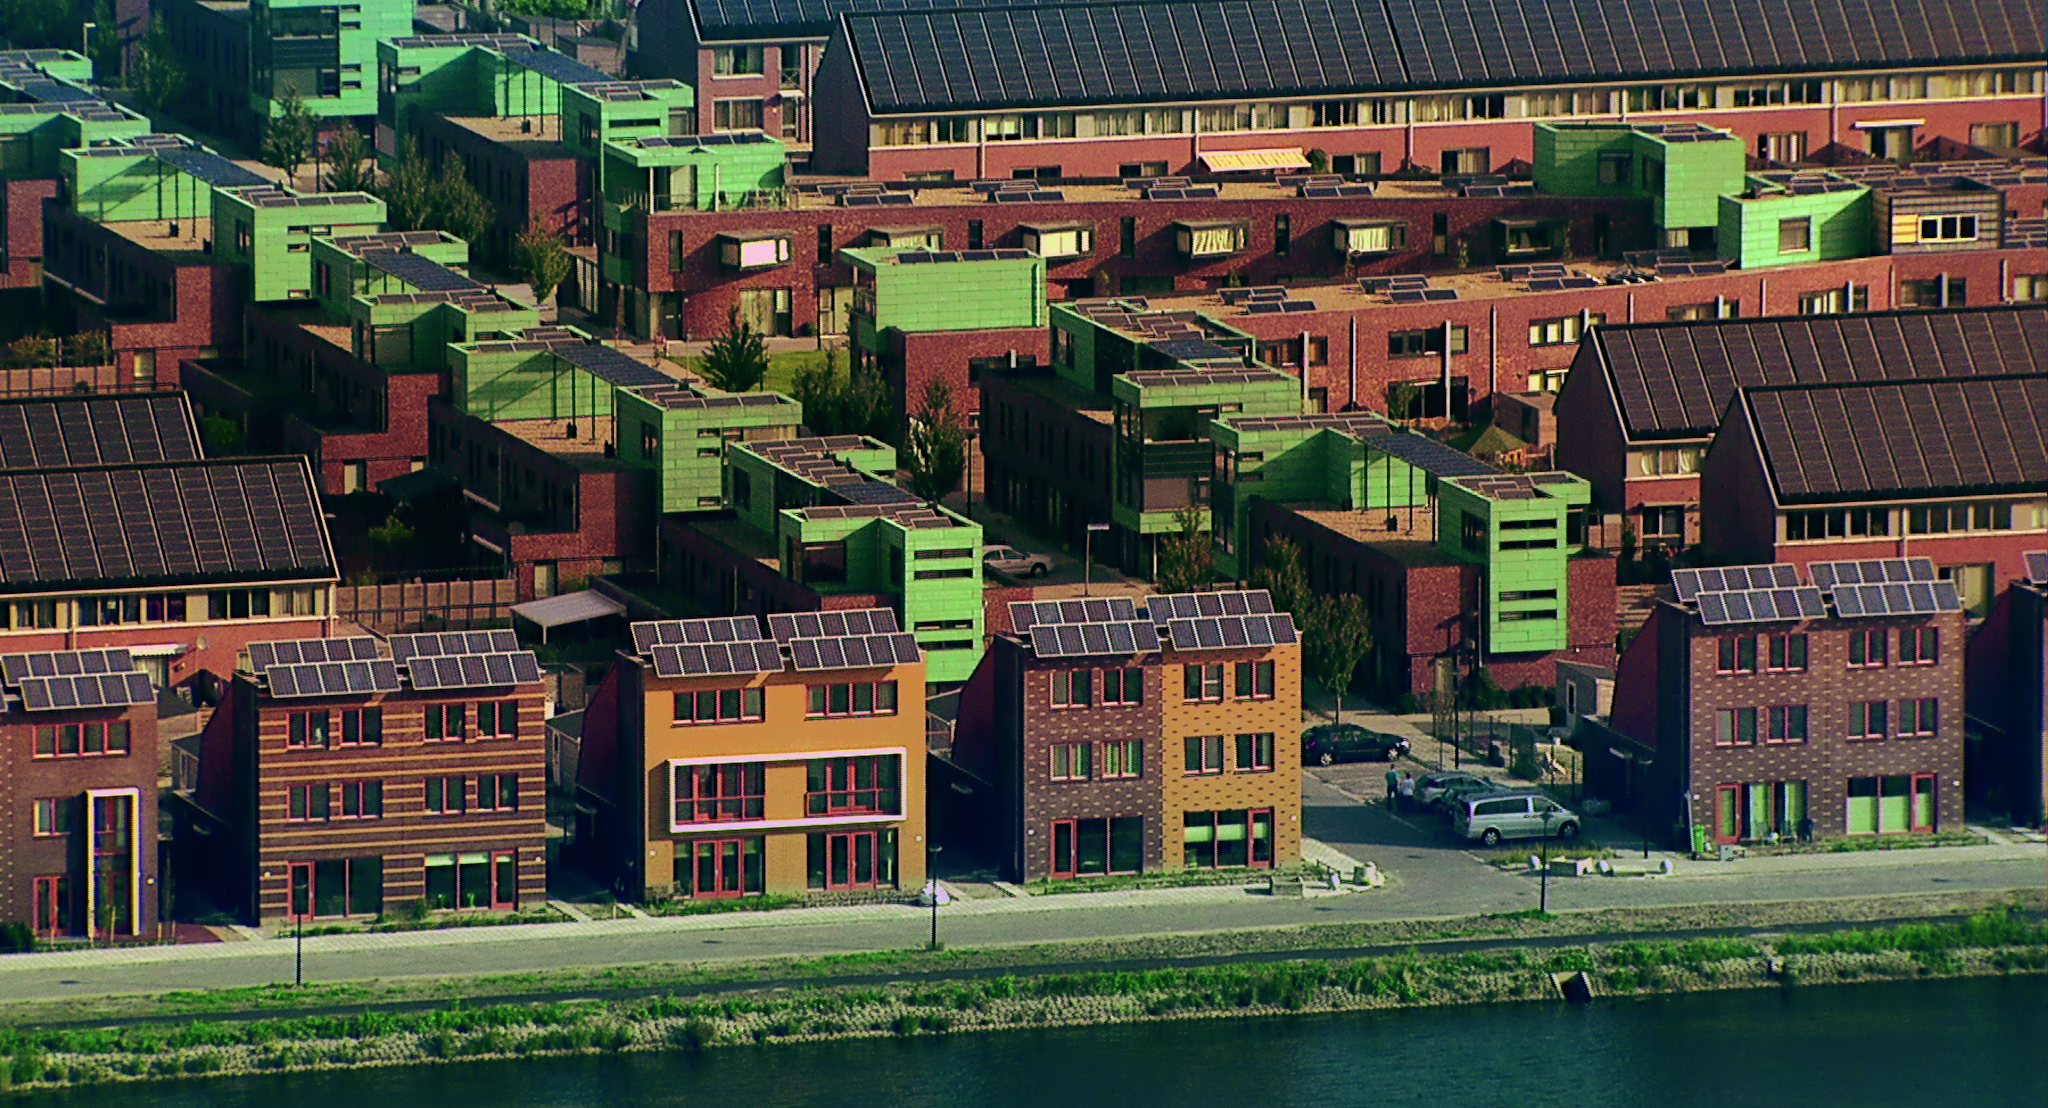 Blick auf ein Wohnquartier, in welchem jedes Haus Solarzellen auf dem Dach hat.